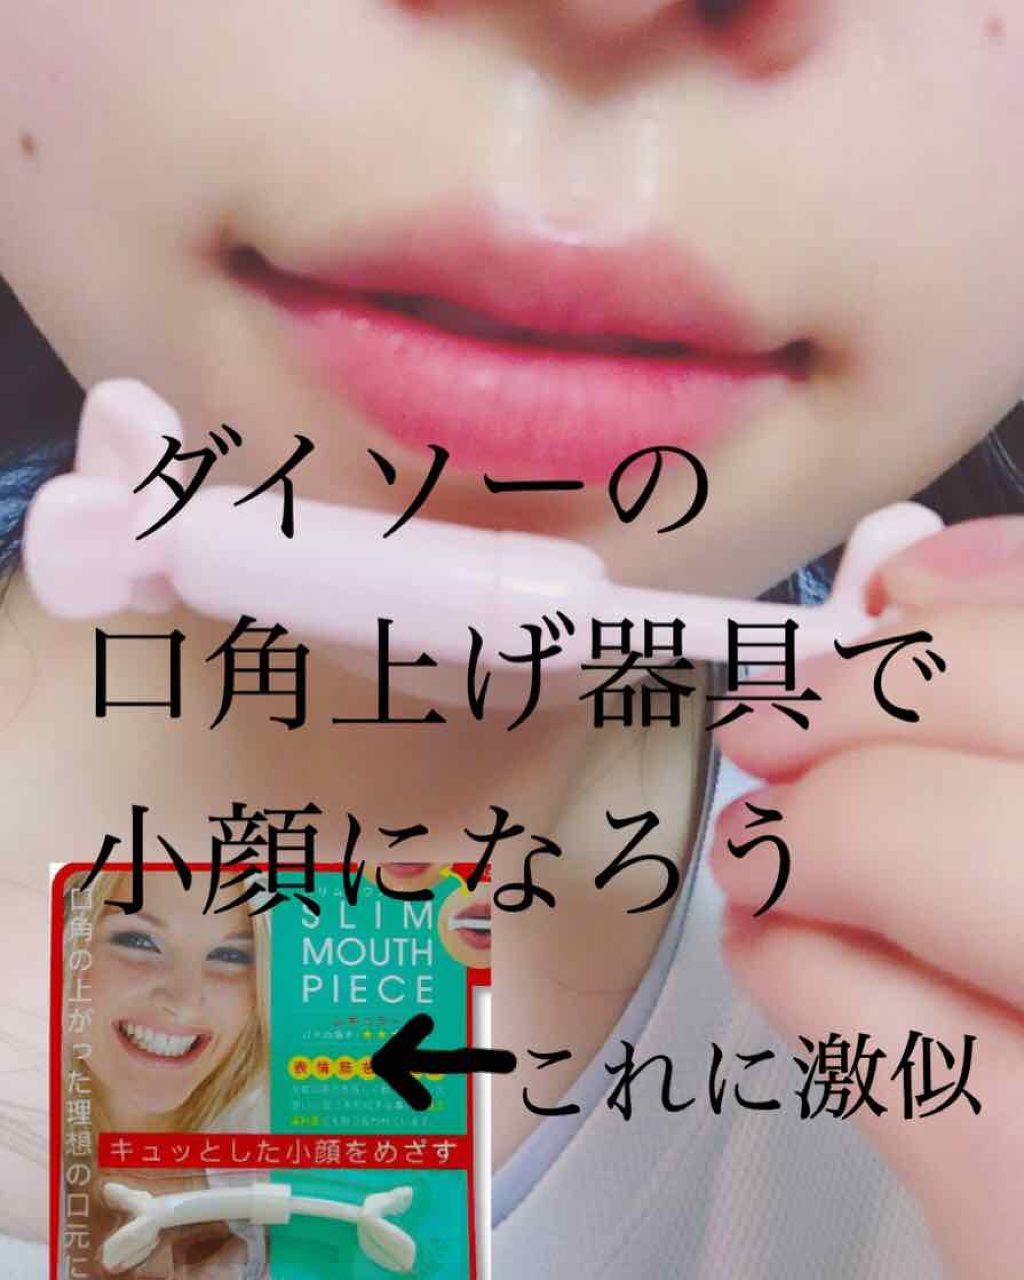 フェイストレーナー Daisoの口コミ 超優秀 100均で買えるおすすめコスメ なんと 口角上げ器具で By うるしざき 普通肌 10代後半 Lips